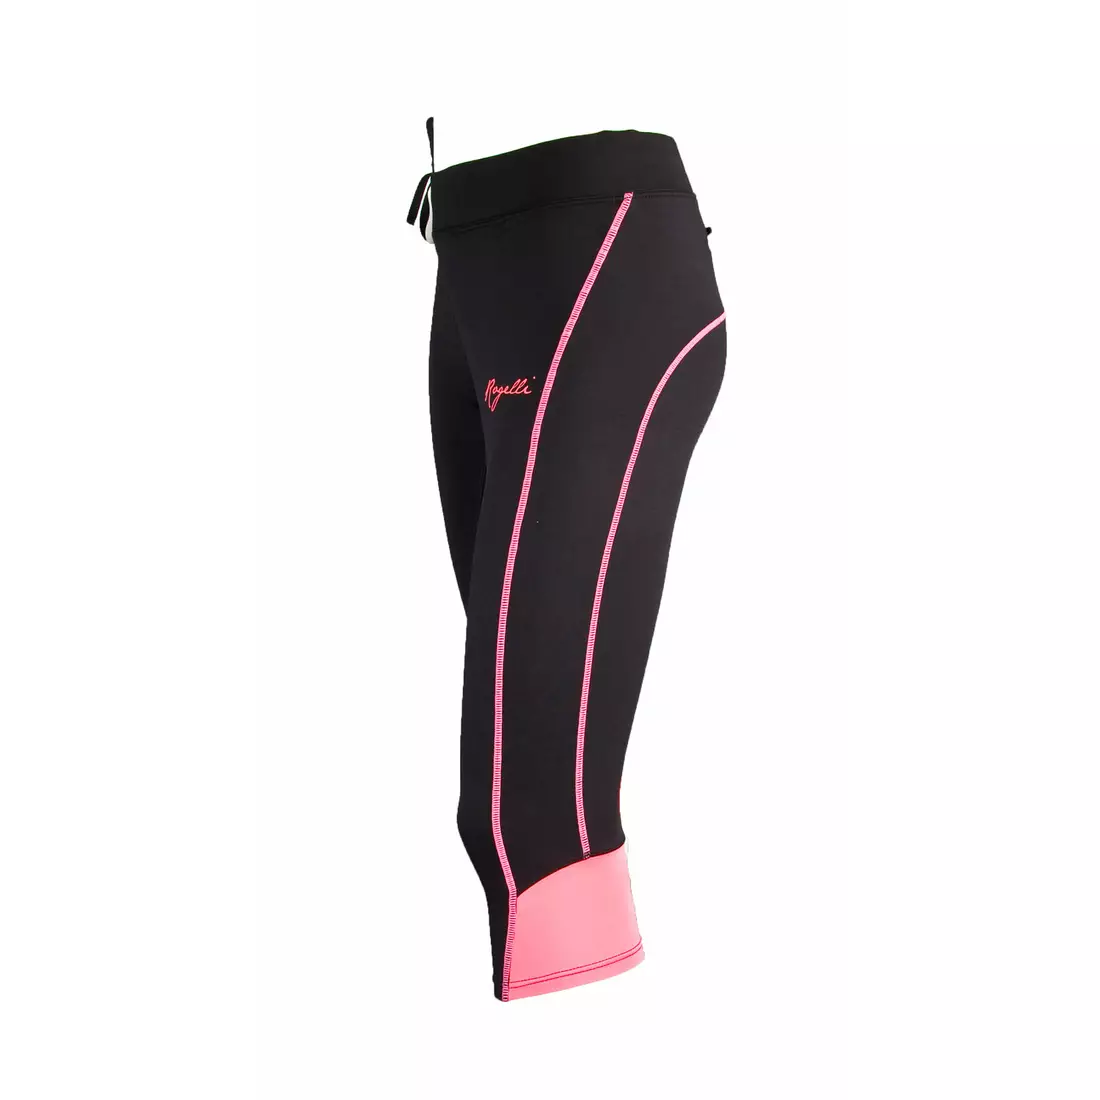 ROGELLI SUEZ dámske bežecké šortky 840.742, 3/4 nohavice, čierno-ružové